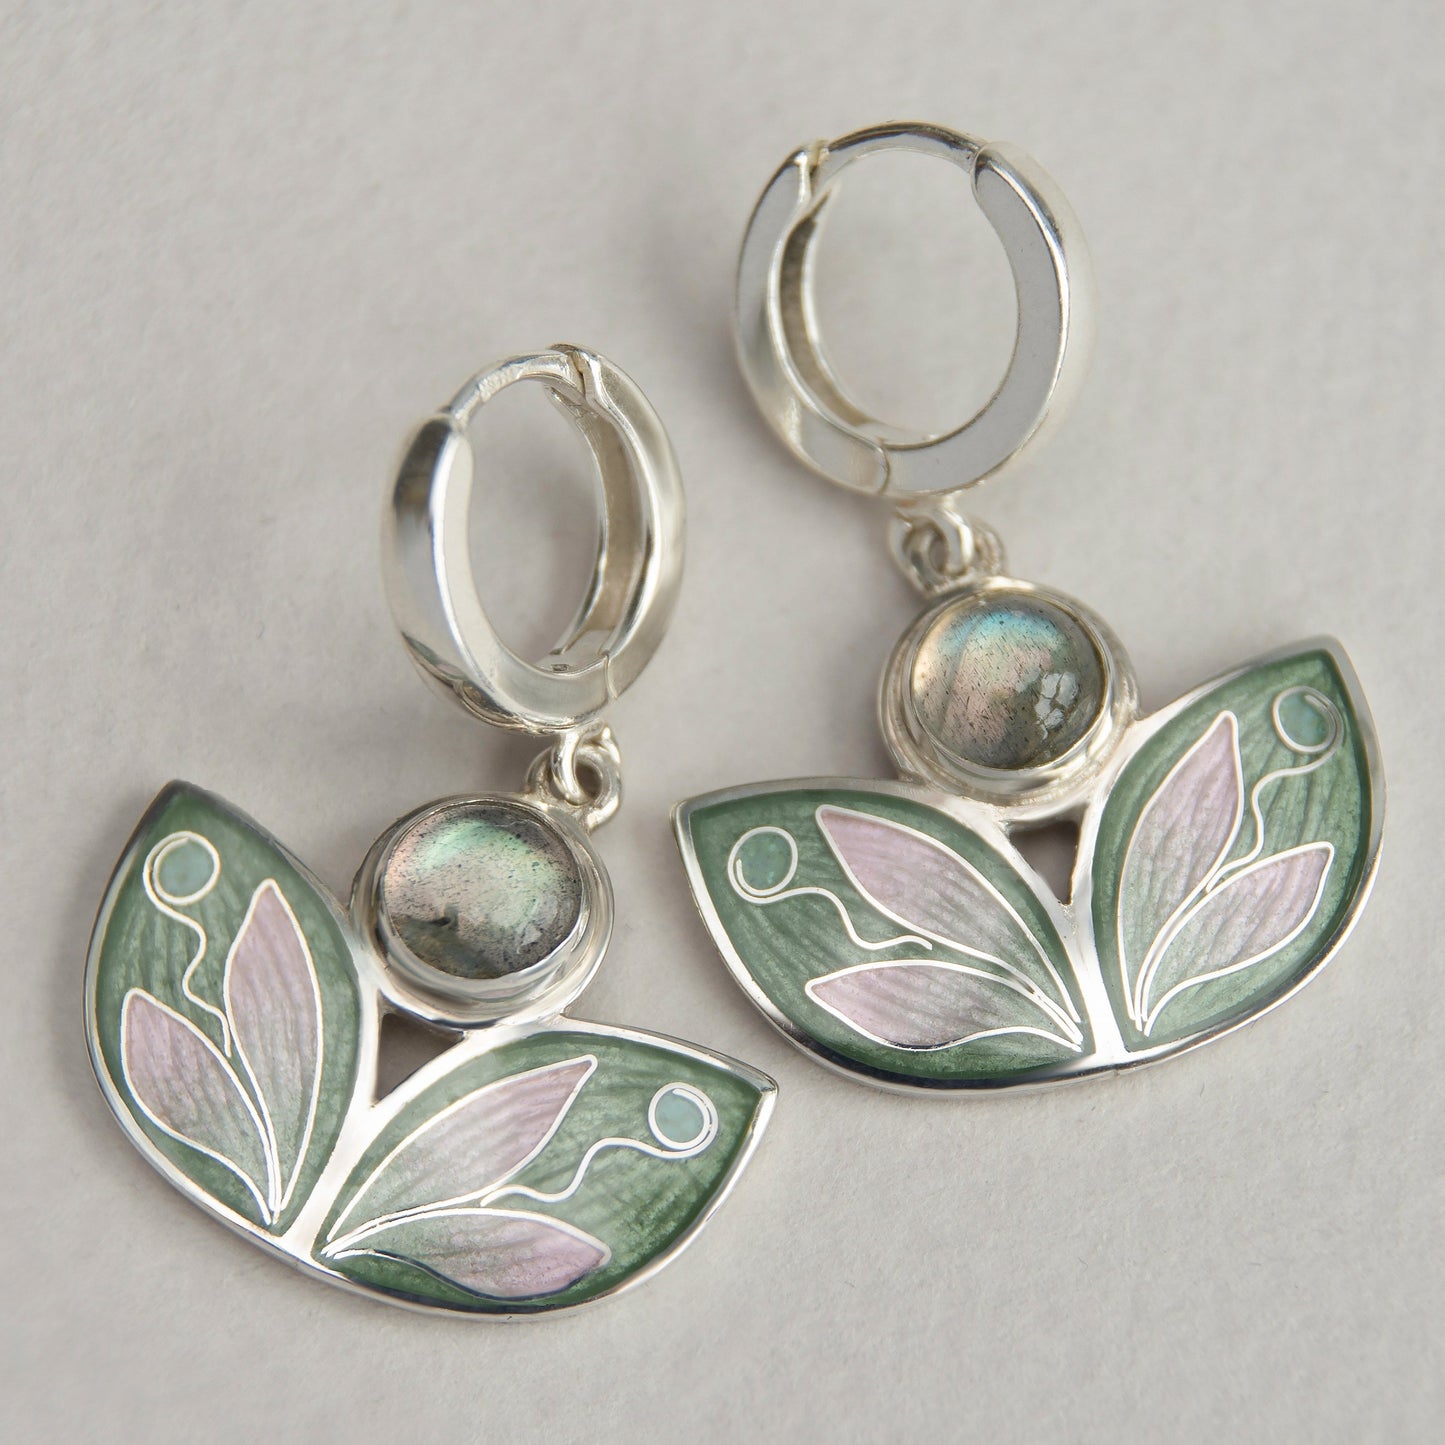 Leaves Shaped Earrings With Labradorite, Cloisonne Enamel Earrings